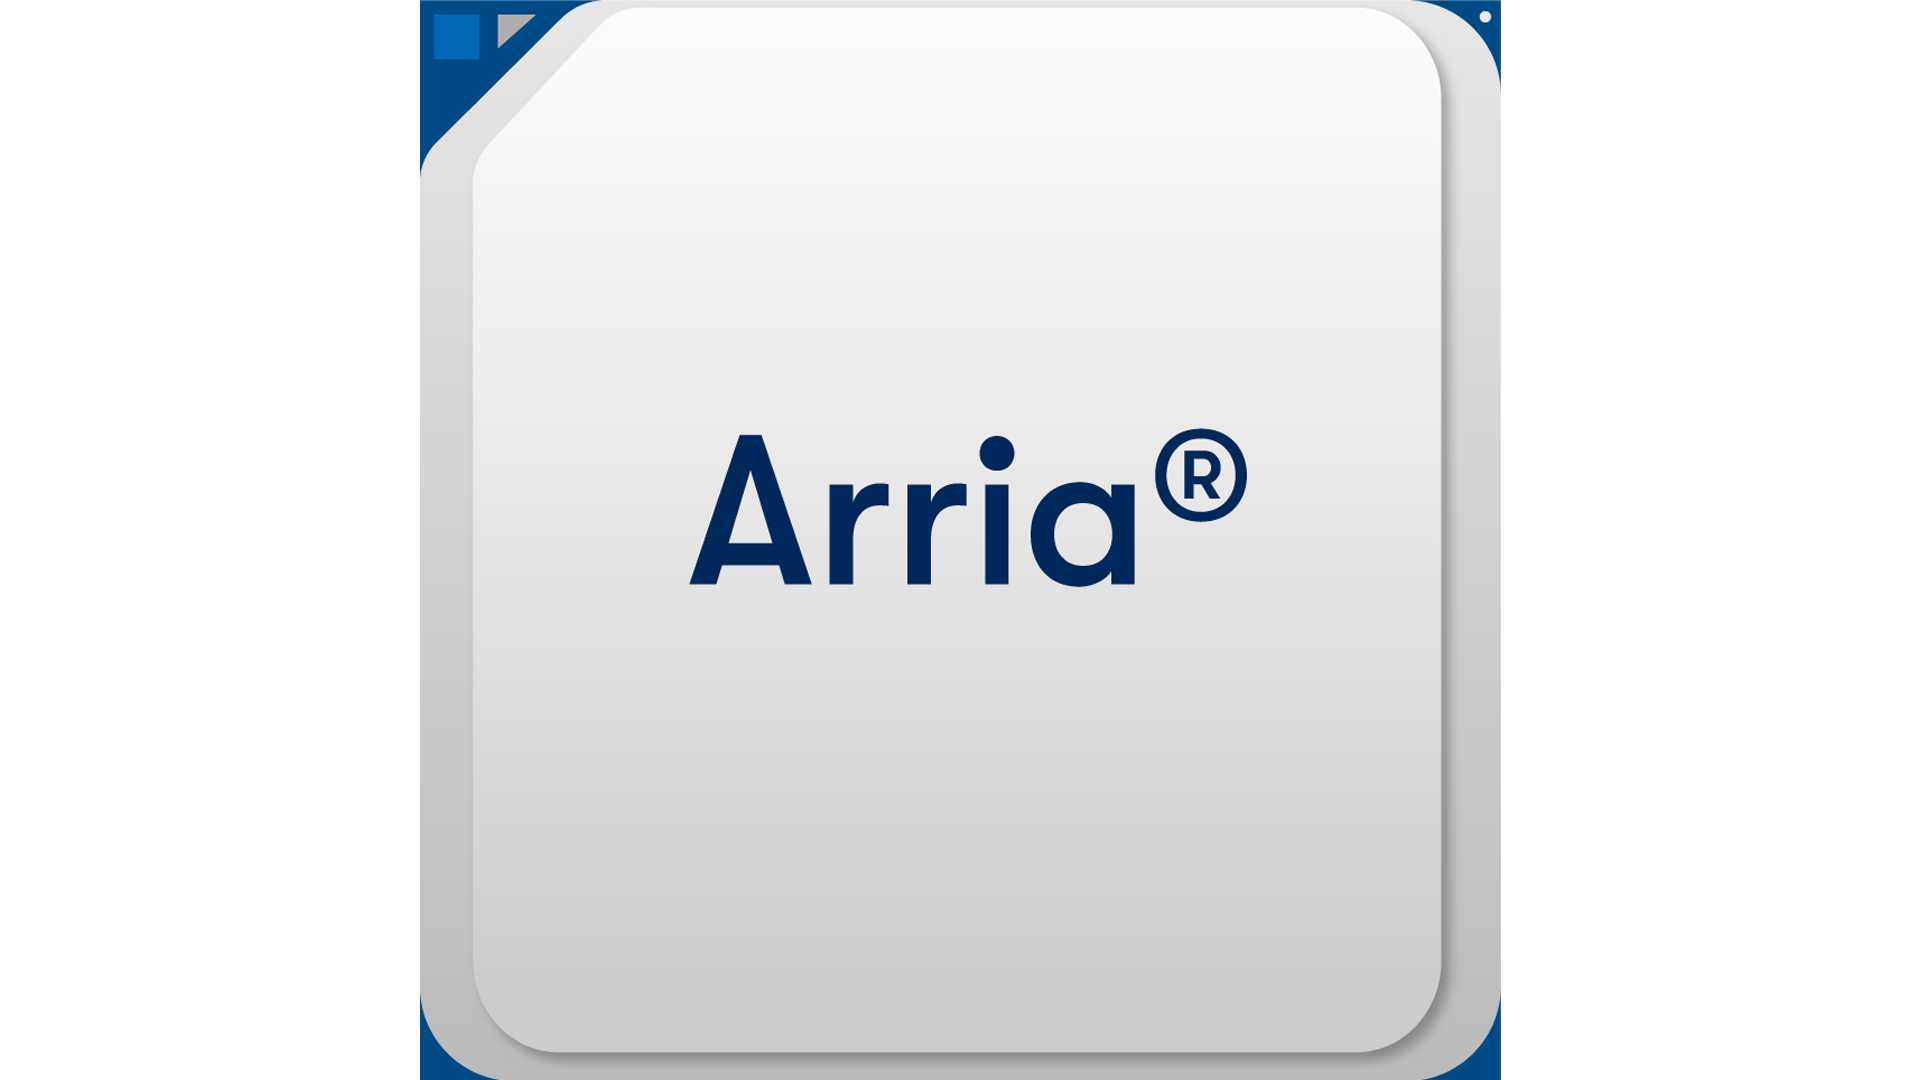 Arria® V GZ FPGA